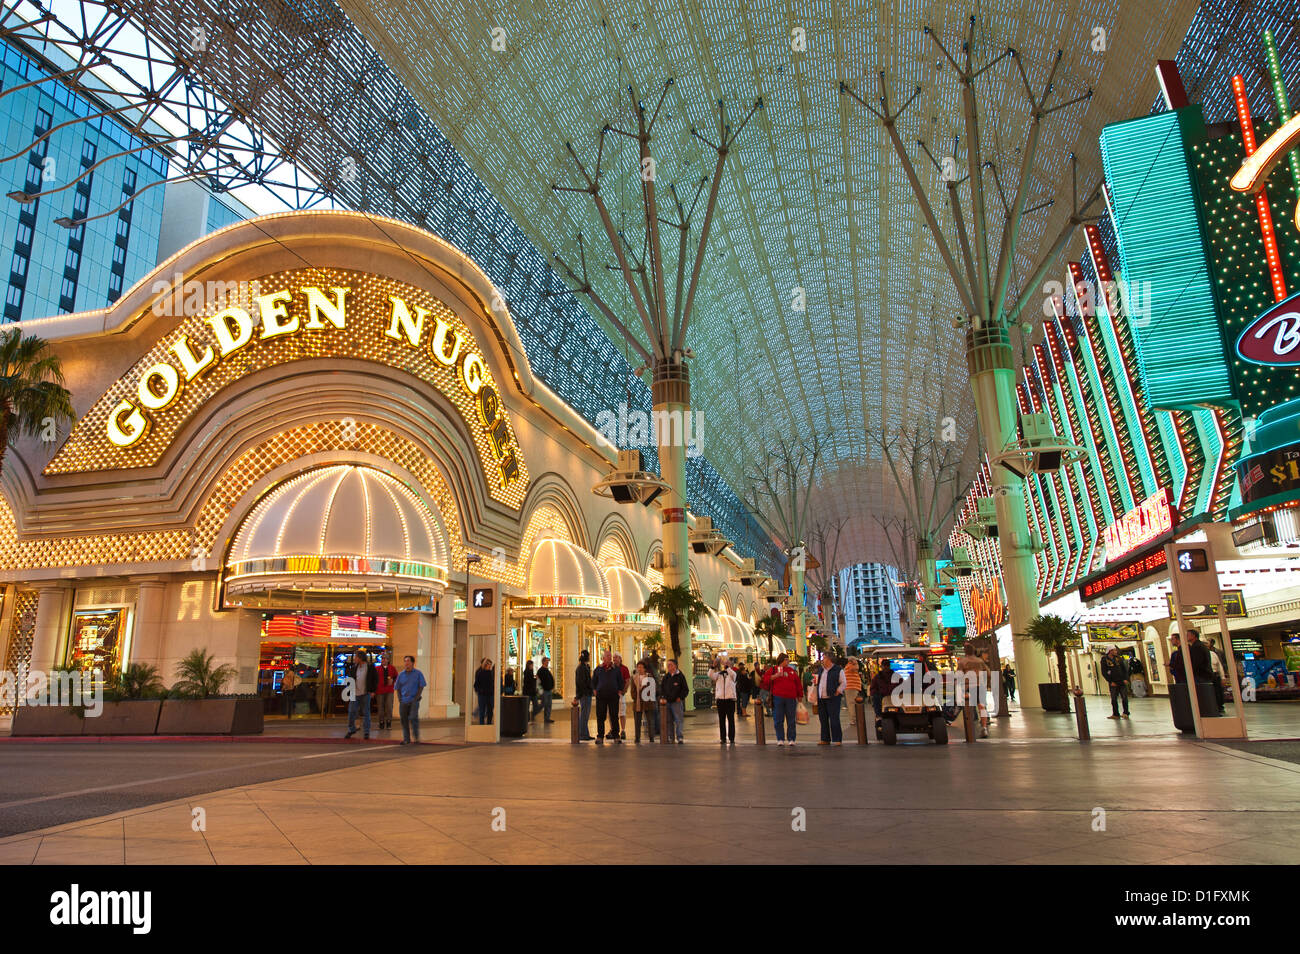 Golden Nugget Casino et Fremont Street Experience, Las Vegas, Nevada, États-Unis d'Amérique, Amérique du Nord Banque D'Images